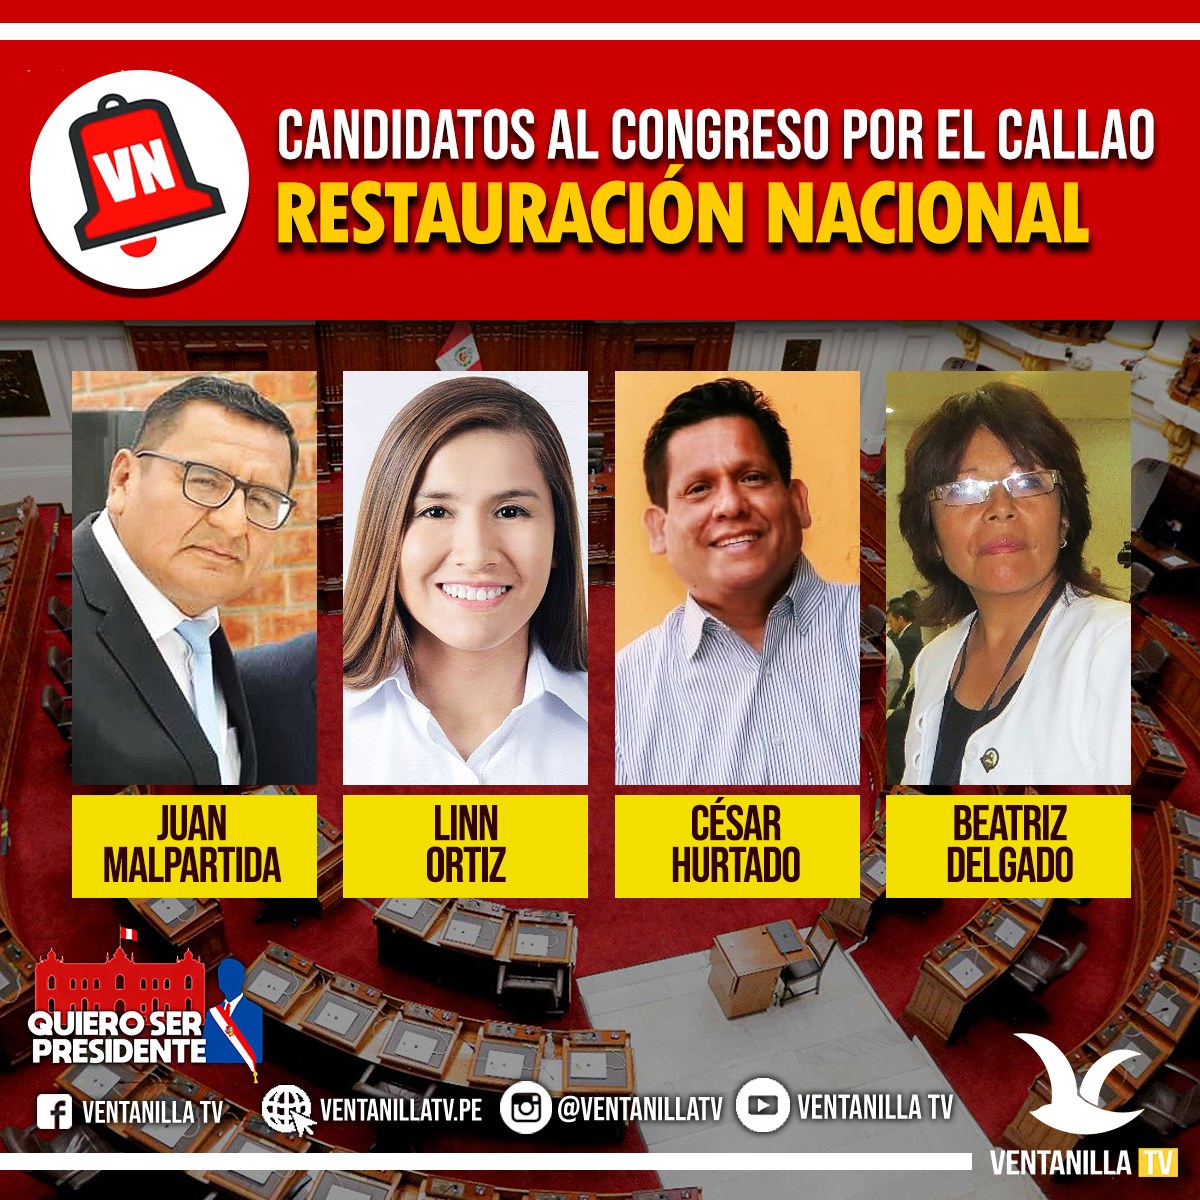 Conozca A Los Candidatos Al Congreso De La RepÚblica 2021 Ventanilla Tv 9721